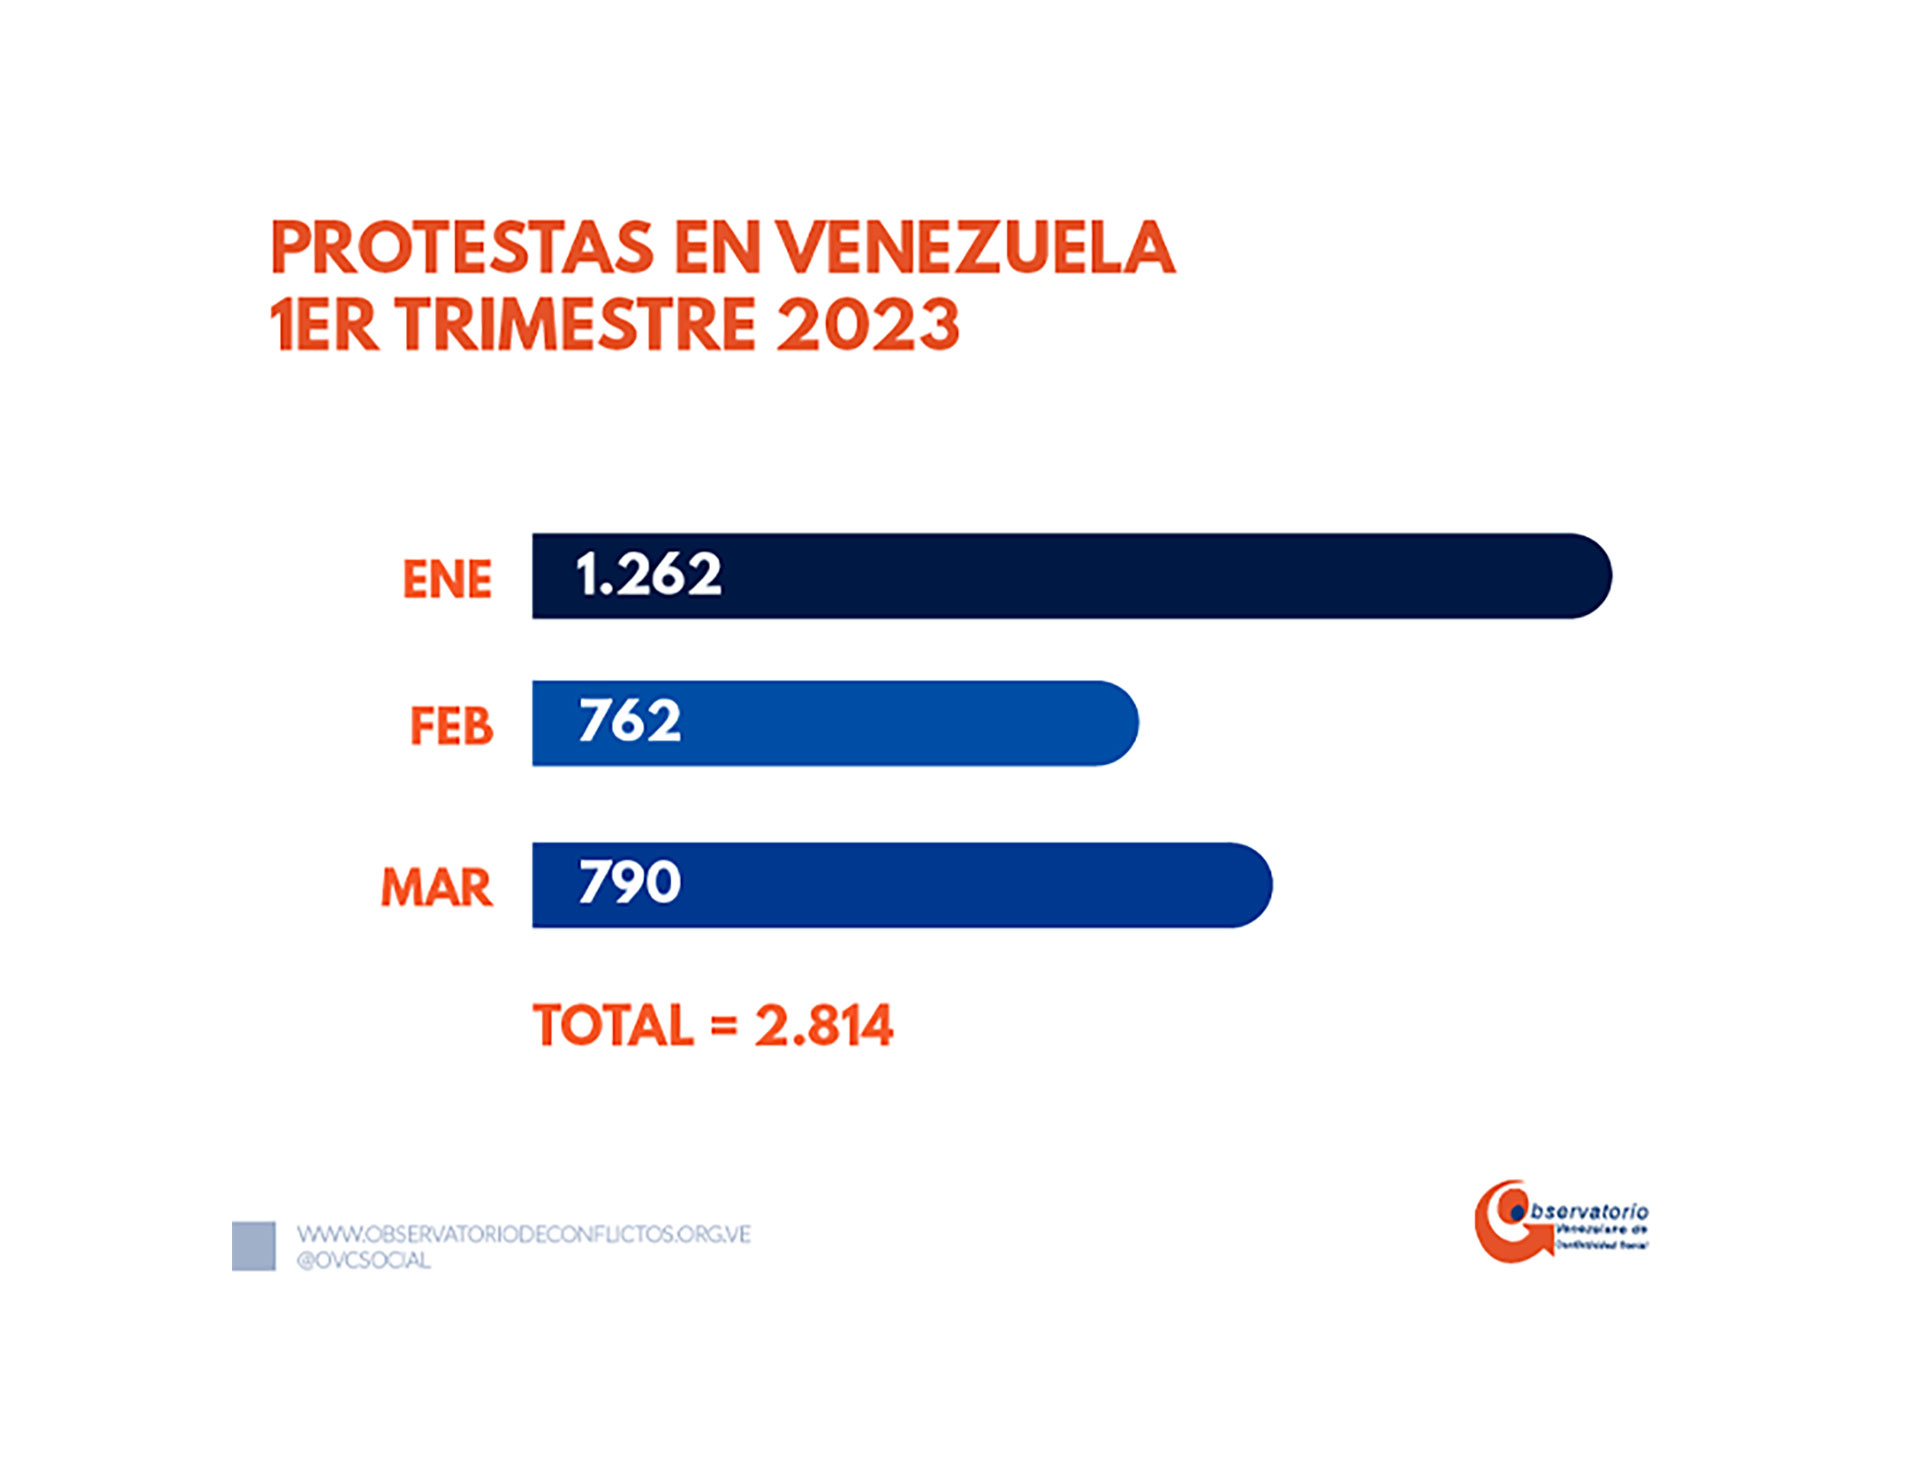 Las protestas discriminadas por meses (Crédito: Observatorio Venezolano de Conflictividad Social)